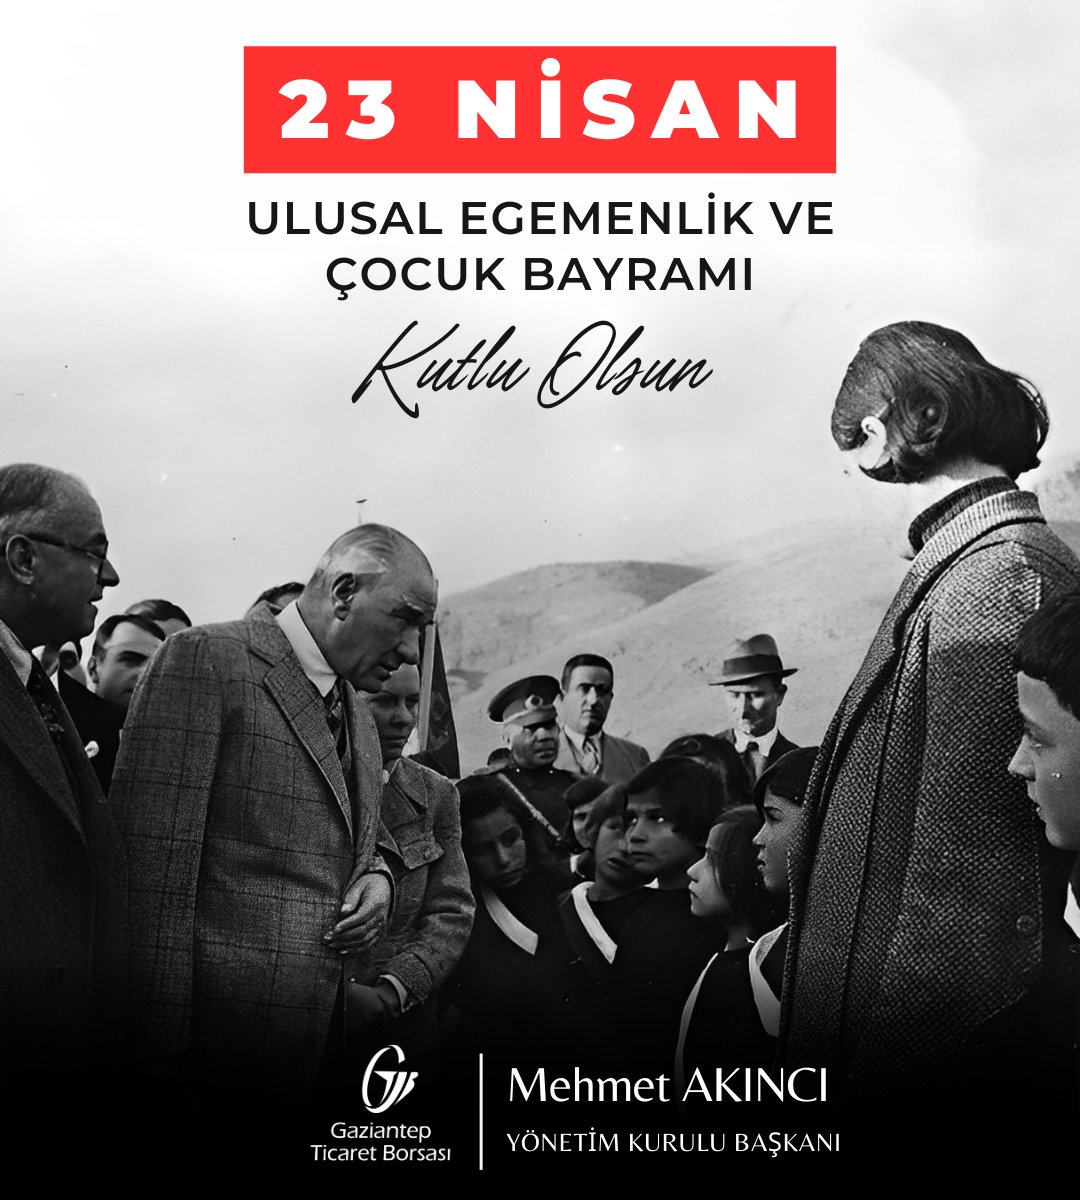 🇹🇷Millî egemenliğimizin ve Cumhuriyetimizin temelini oluşturan TBMM’nin kuruluşunun 104. yıl dönümünü ve 23 Nisan Ulusal Egemenlik ve Çocuk Bayramı’nı kutluyor; Gazi Mustafa Kemal Atatürk ile kahraman şehit ve gazilerimizi saygı ve minnetle yad ediyorum. #23NisanKutluOlsun